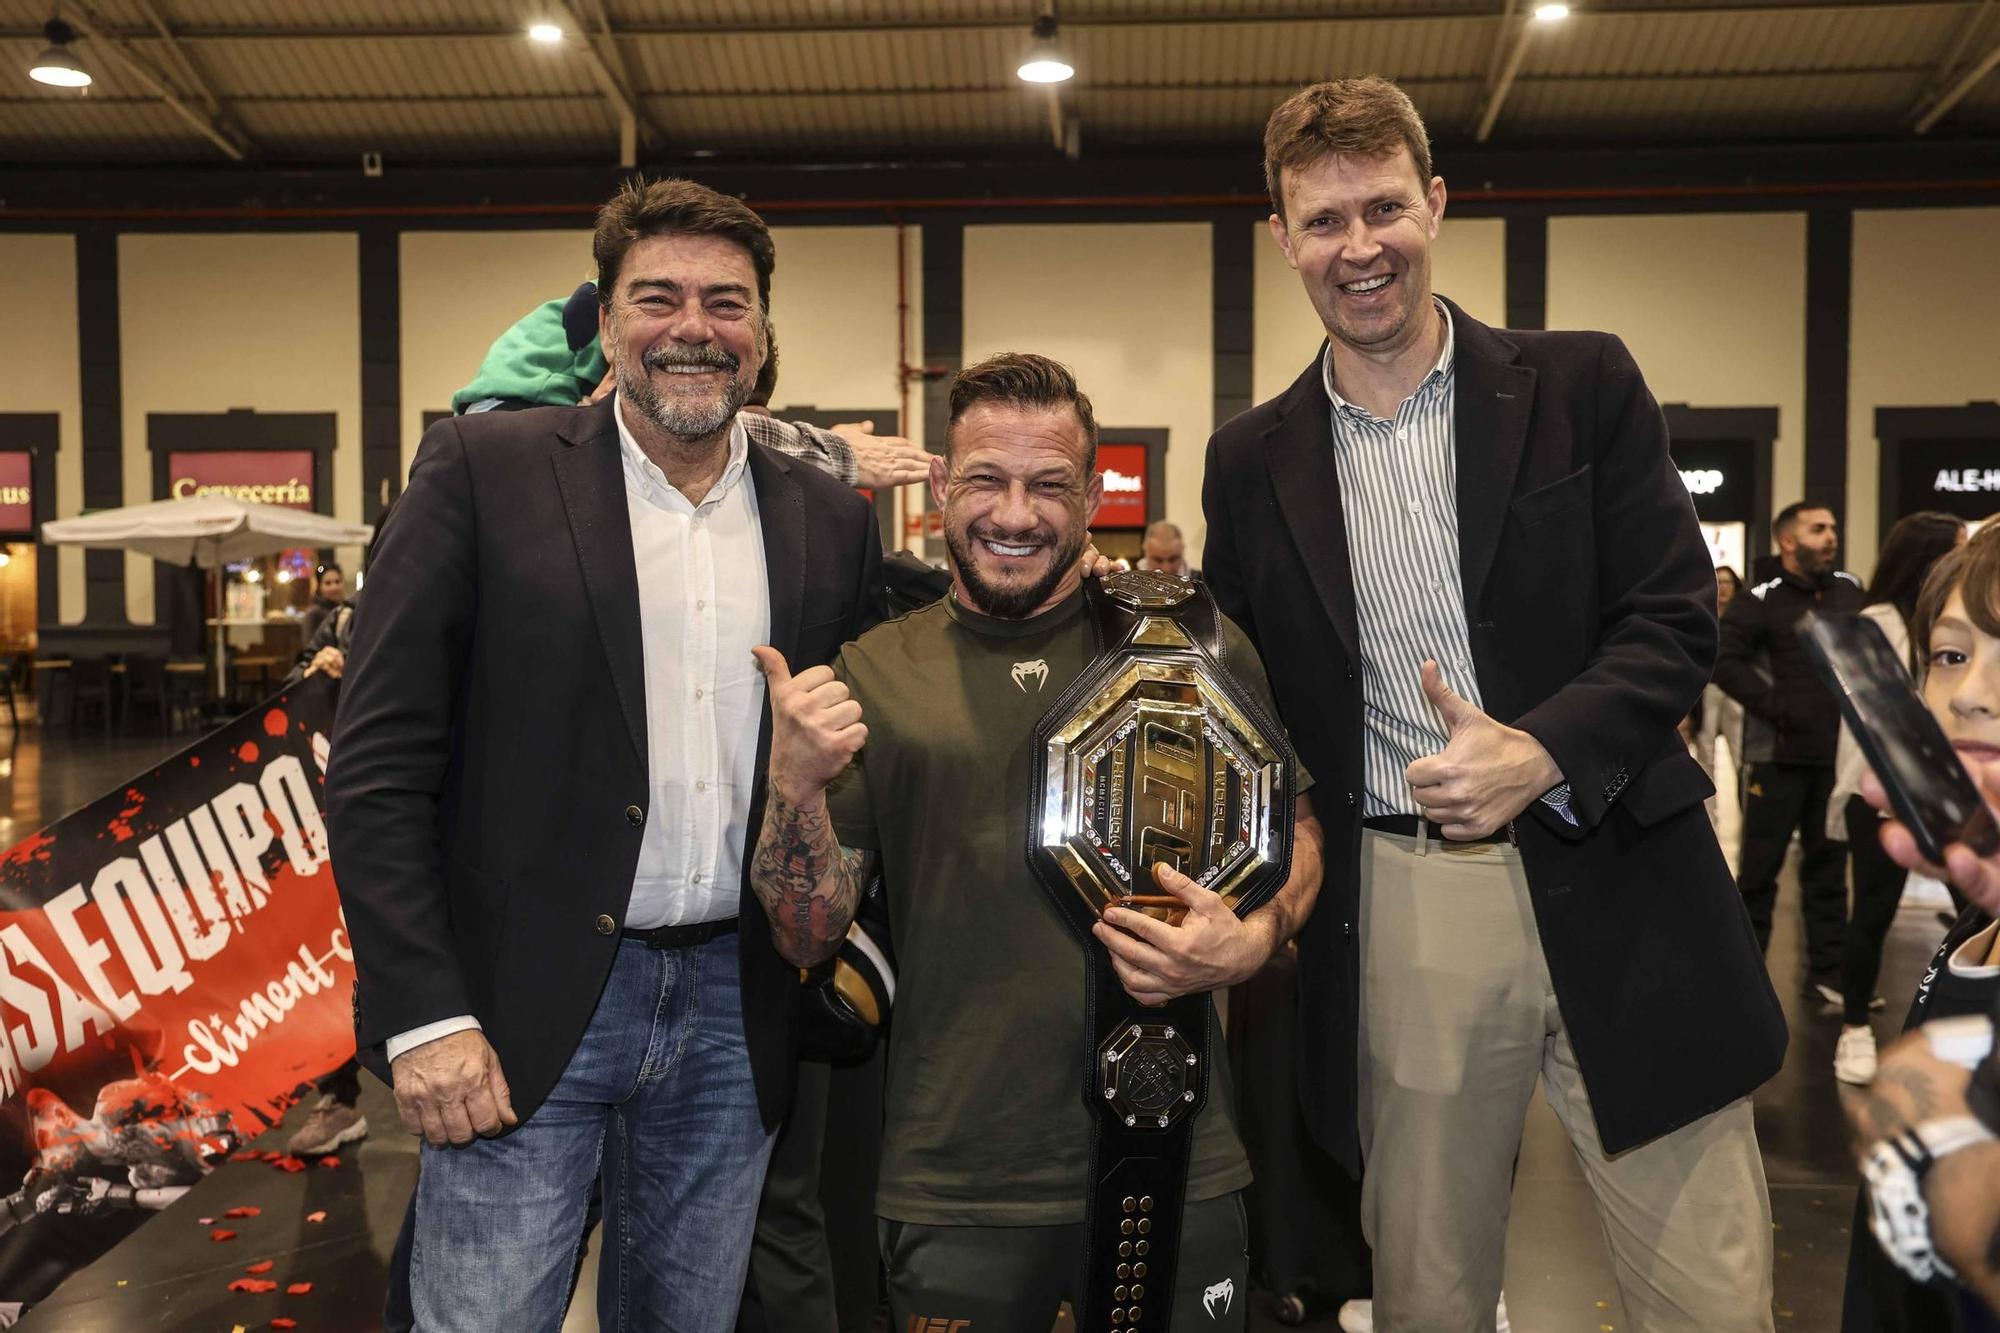 Recibimiento en la estación de tren de Alicante al equipo de Ilia Topuria, campeón de la UFC.